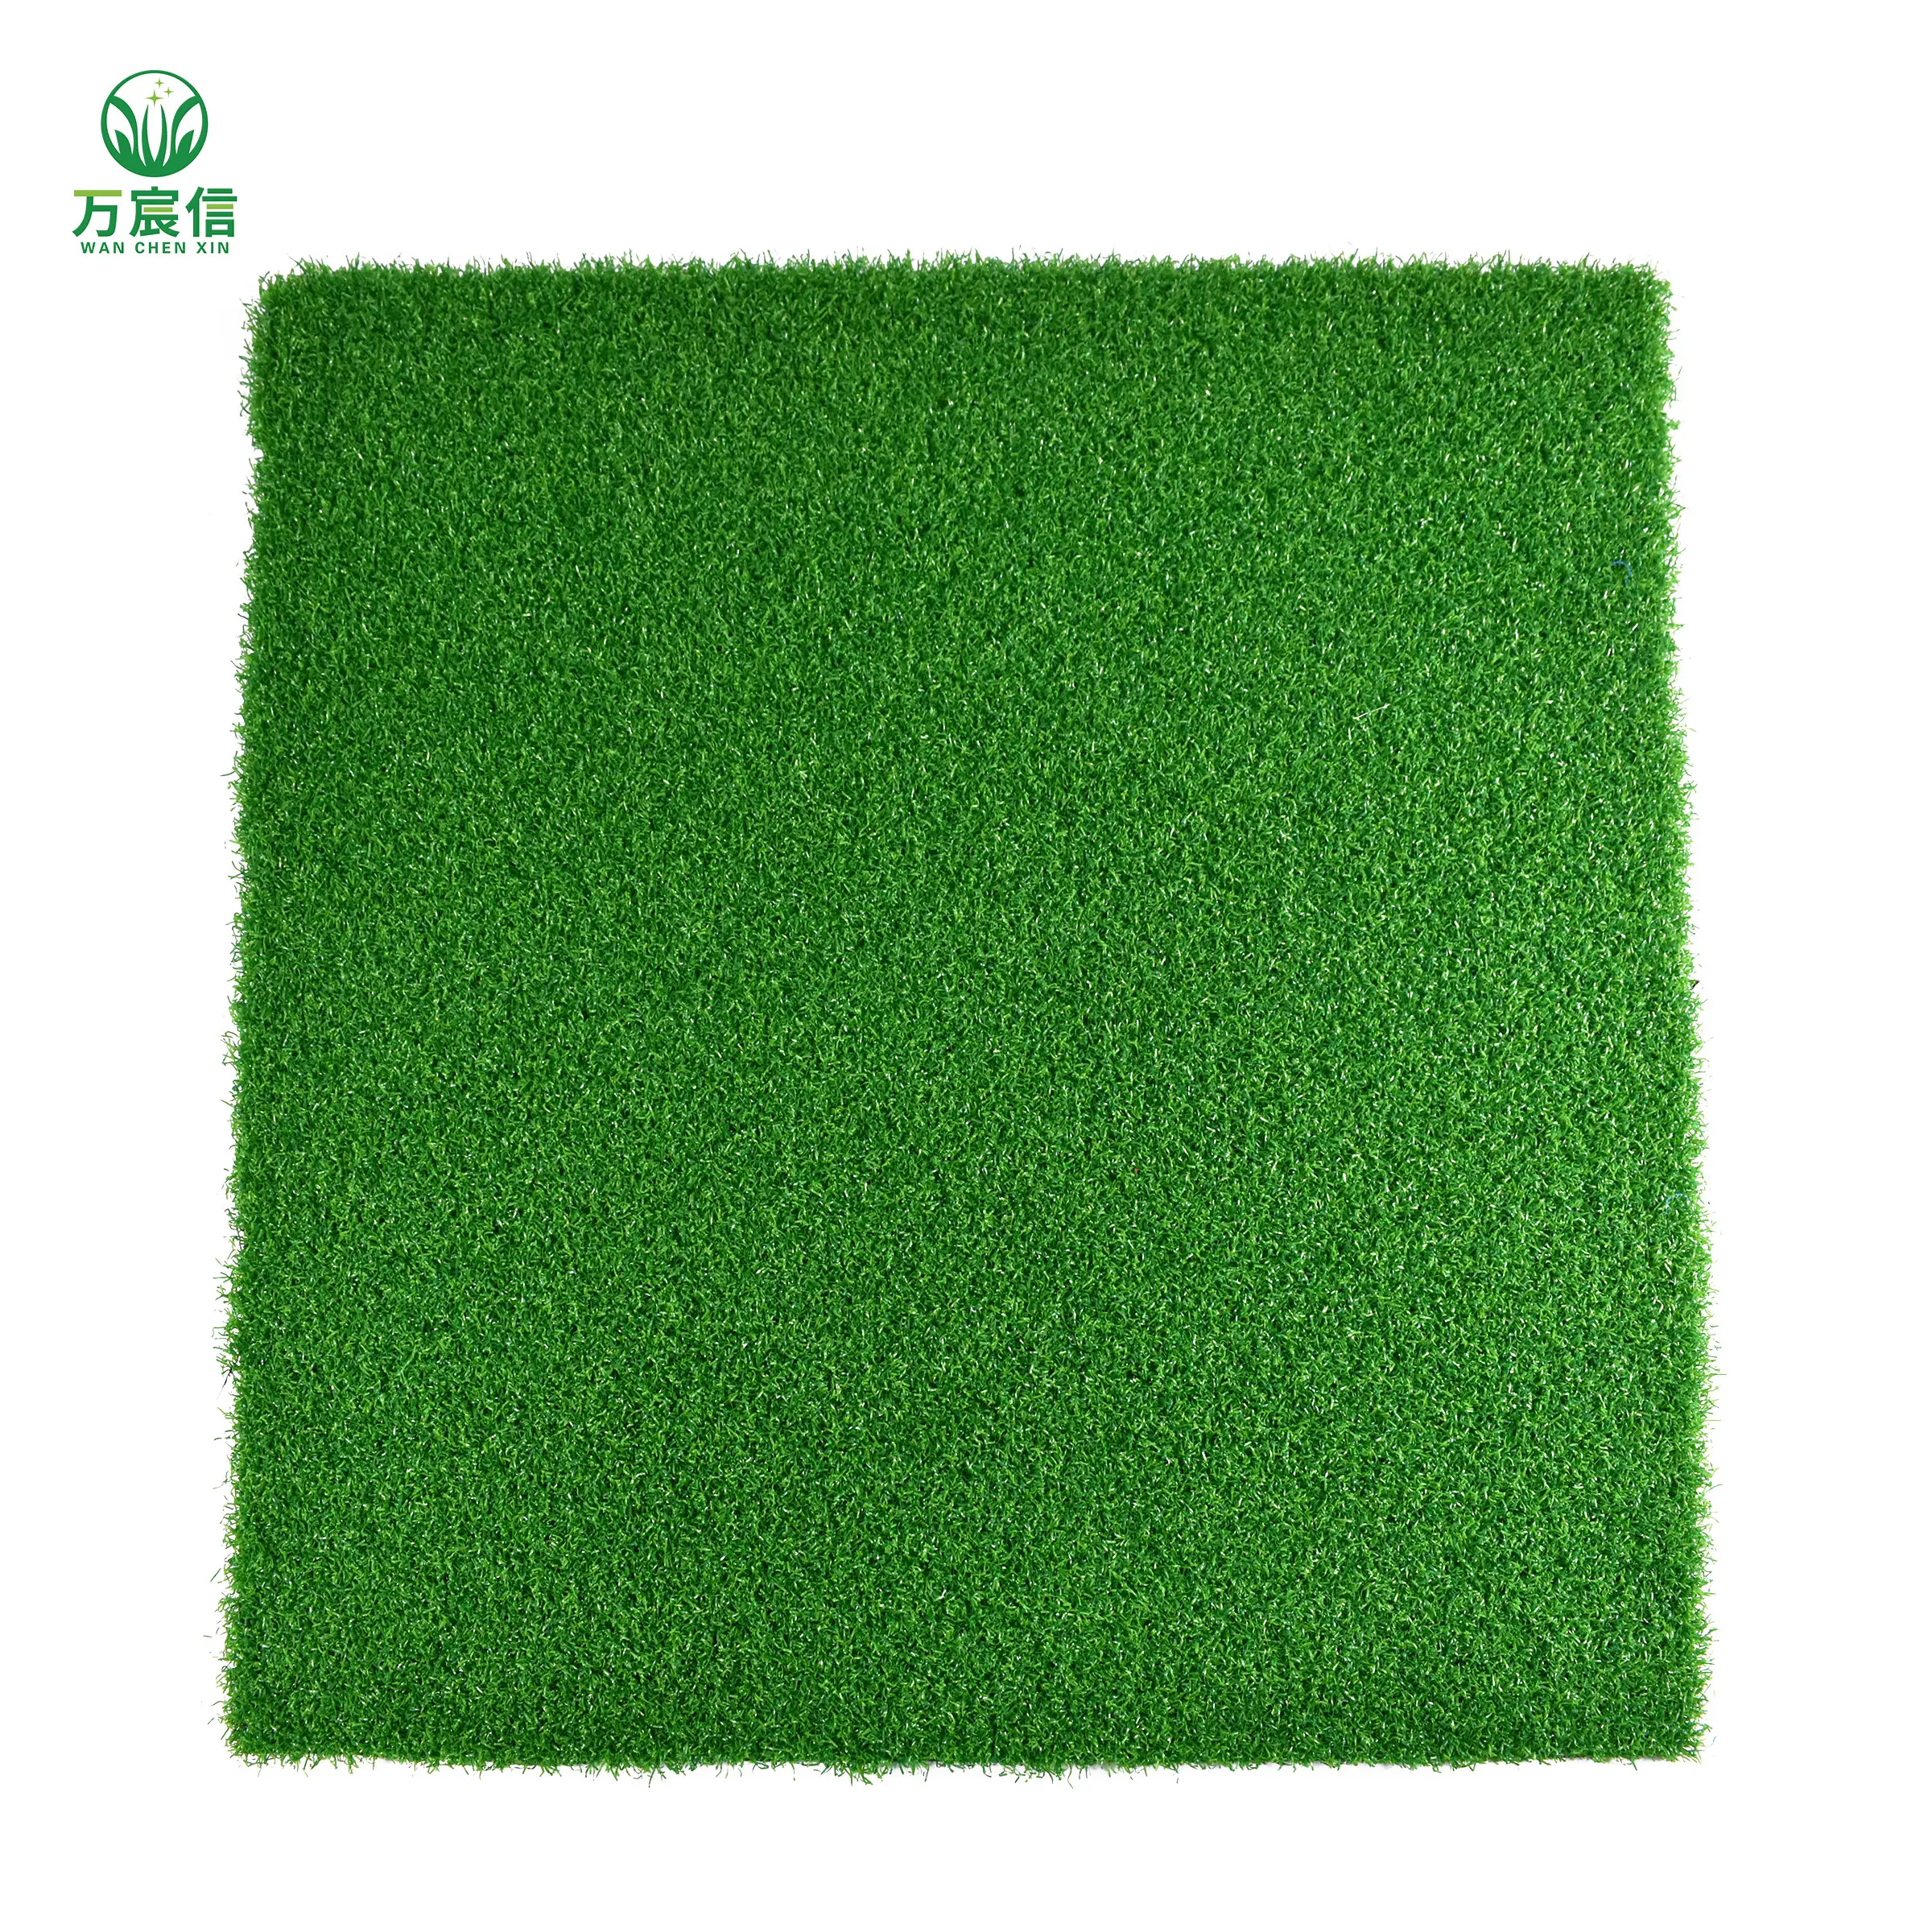 عين جولف الأخضر عشب صناعي المجال الرياضي الصينية الذهبي المورد الساخن بيع عشب صناعي